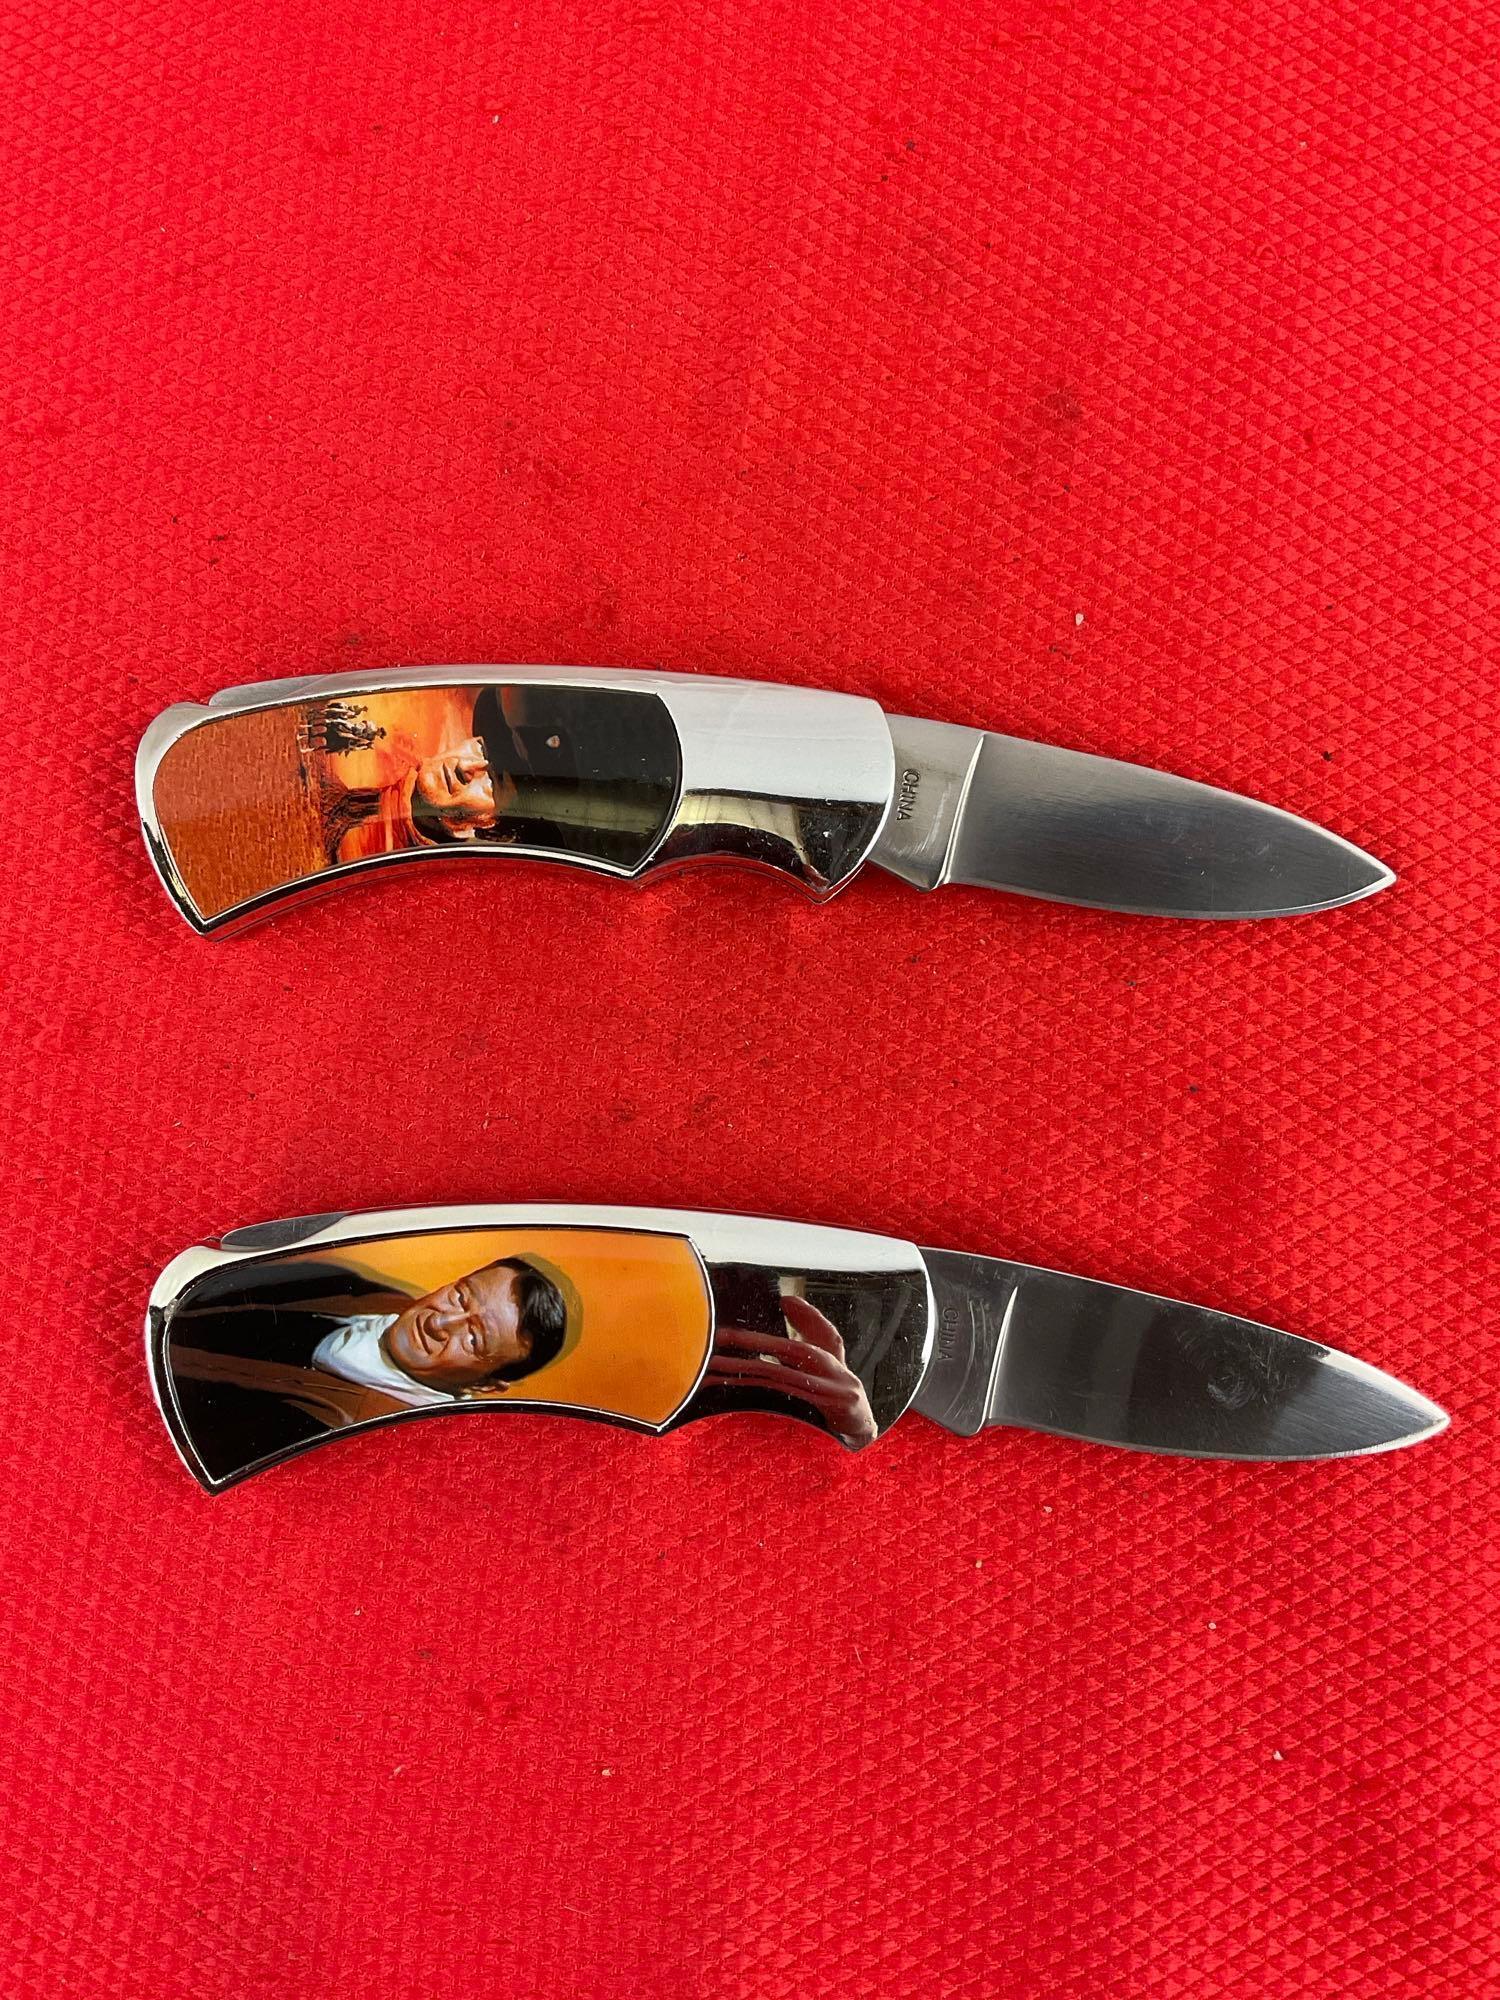 2 pcs Collectible John Wayne Handle Folding Pocket Knives Models KB8785 & 18784. NIB. See pics.